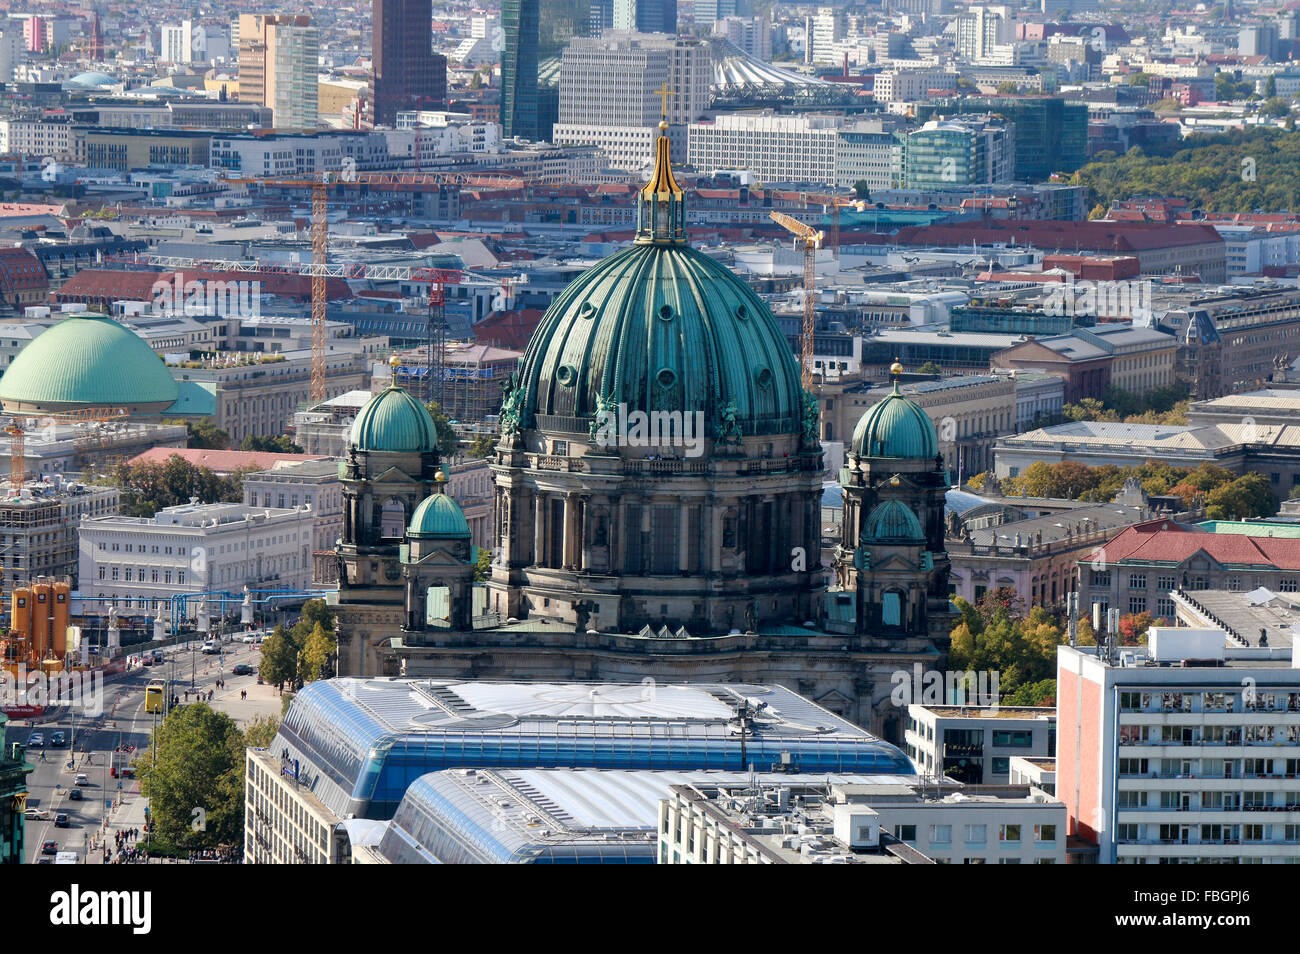 Luftbild: Skyline von Berlin Mitte mit dem Berliner Dom, Unter den Linden, Berlin. Stock Photo